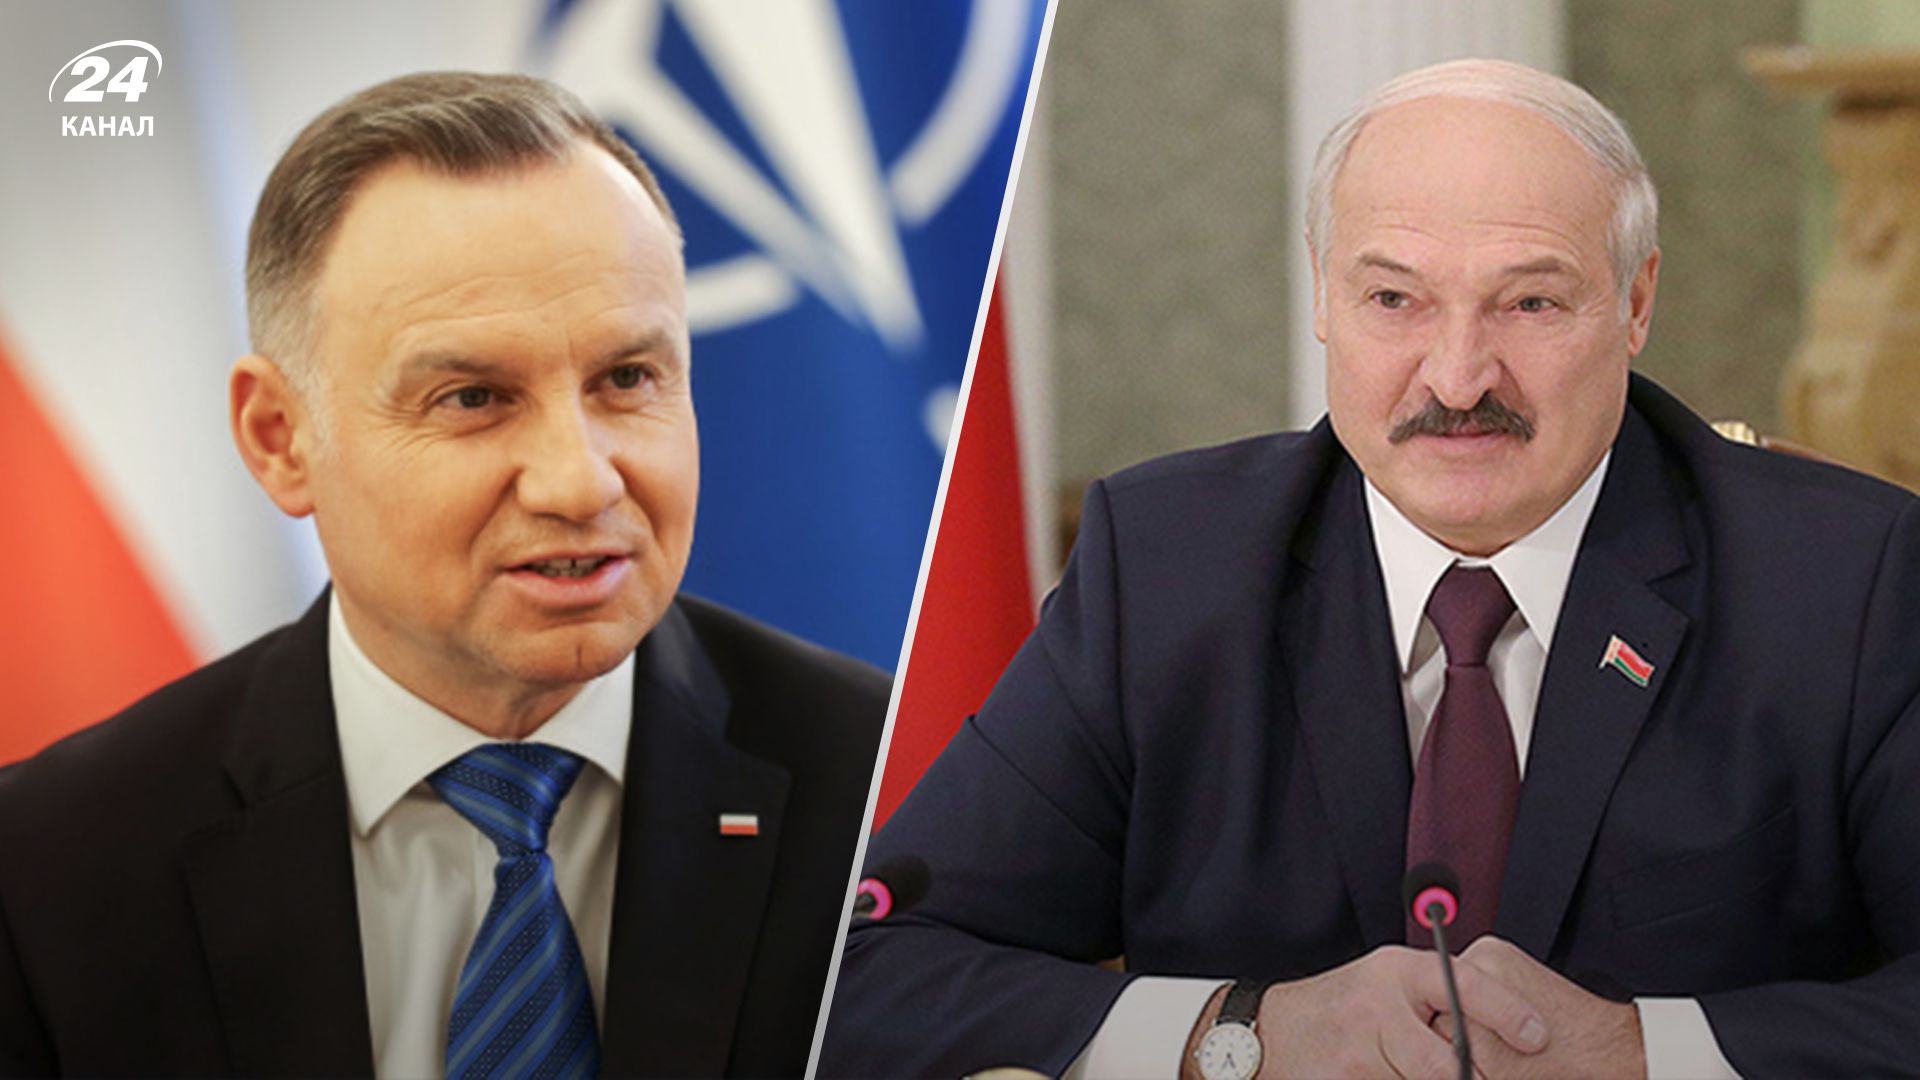 Лукашенко намагається посіяти ворожнечу між Білоруссю та Польщею - навіщо це диктатору - 24 Канал